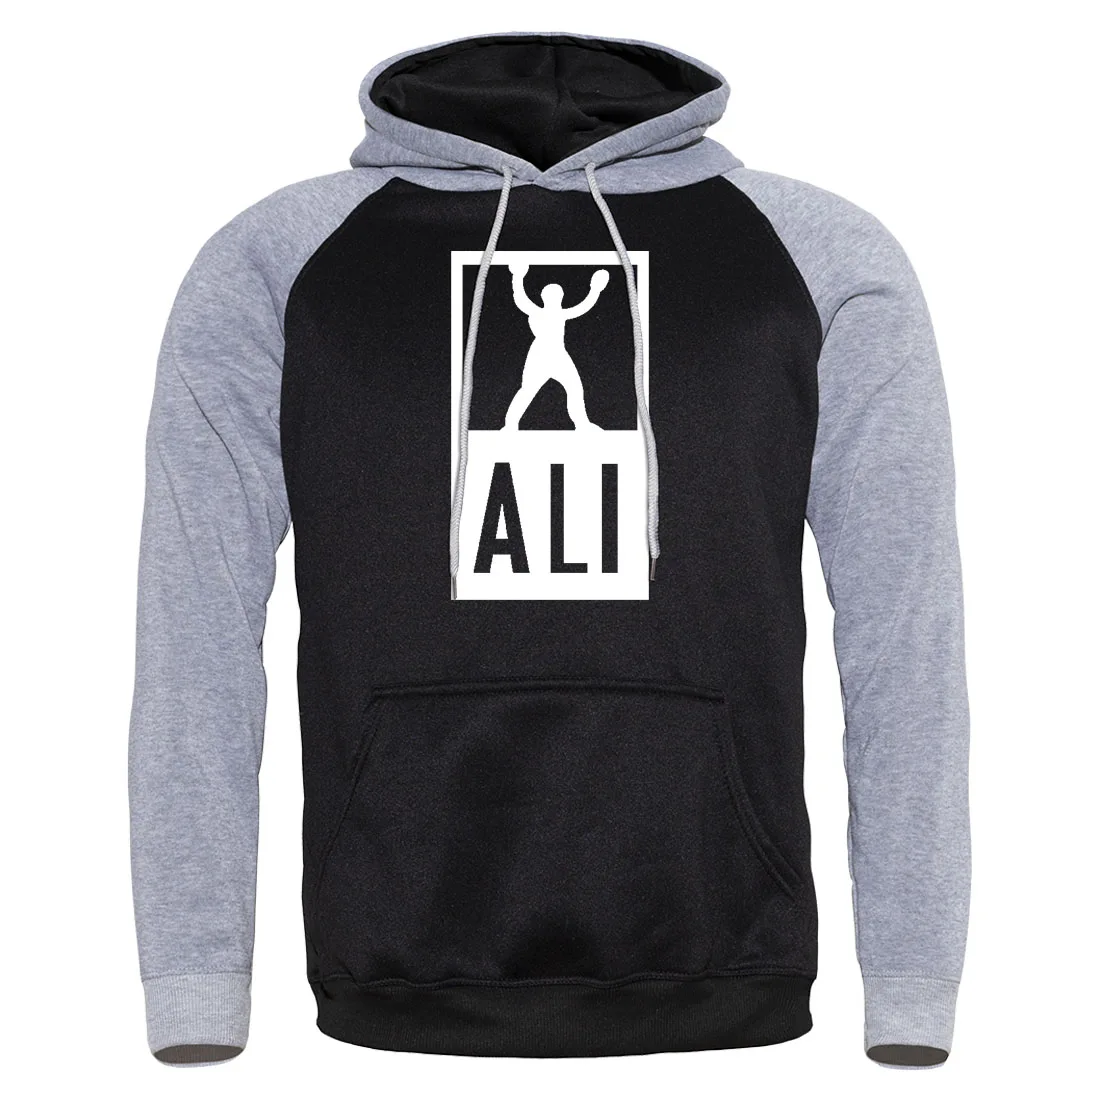 Новое поступление, горячая распродажа, боксерская Мужская спортивная одежда в стиле Мохаммед Али Харадзюку, Мужской пуловер, мужской спортивный костюм, модный бренд, уличная одежда с капюшоном - Цвет: gray black 5